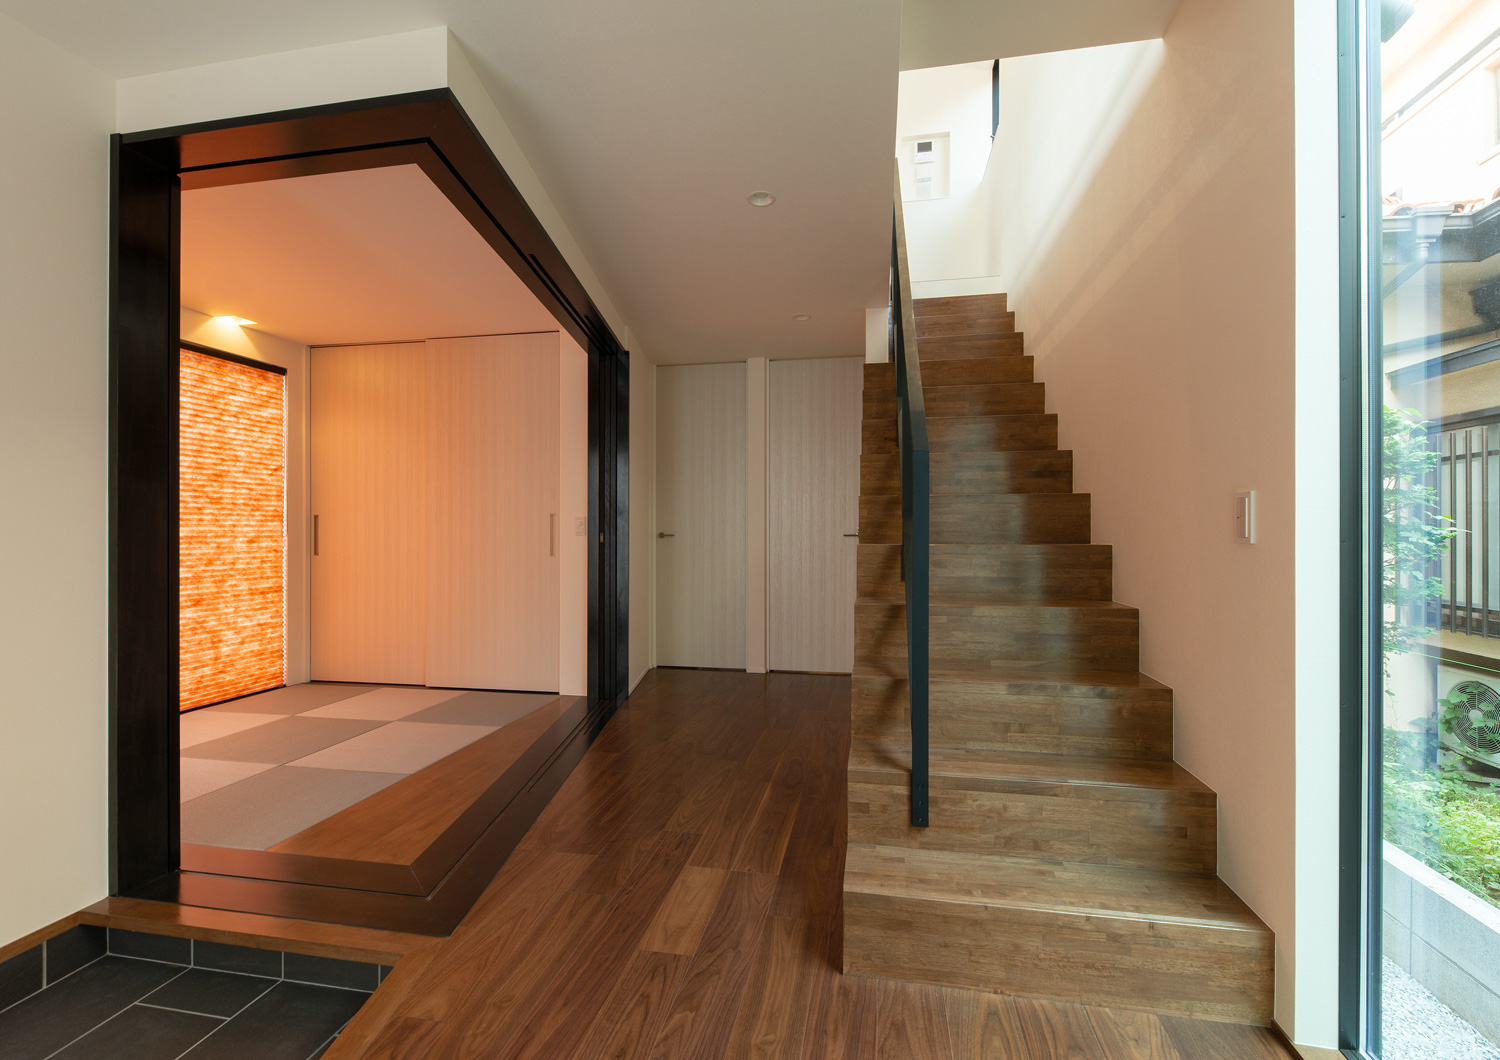 和室と木の箱型階段が廊下を挟んで向かい合っている様子・デザイン住宅